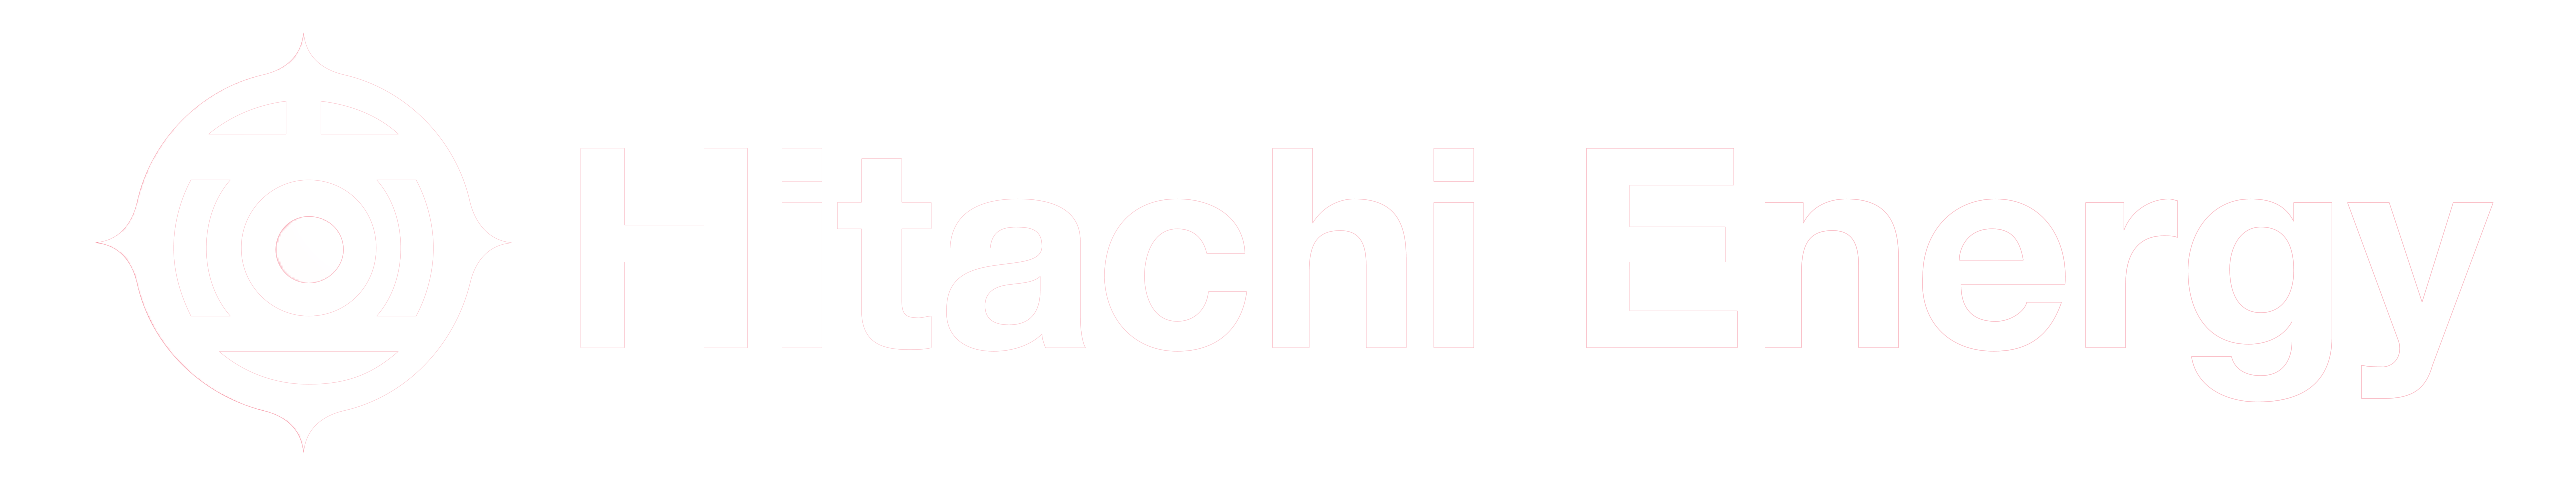 Hitachi Energy - white